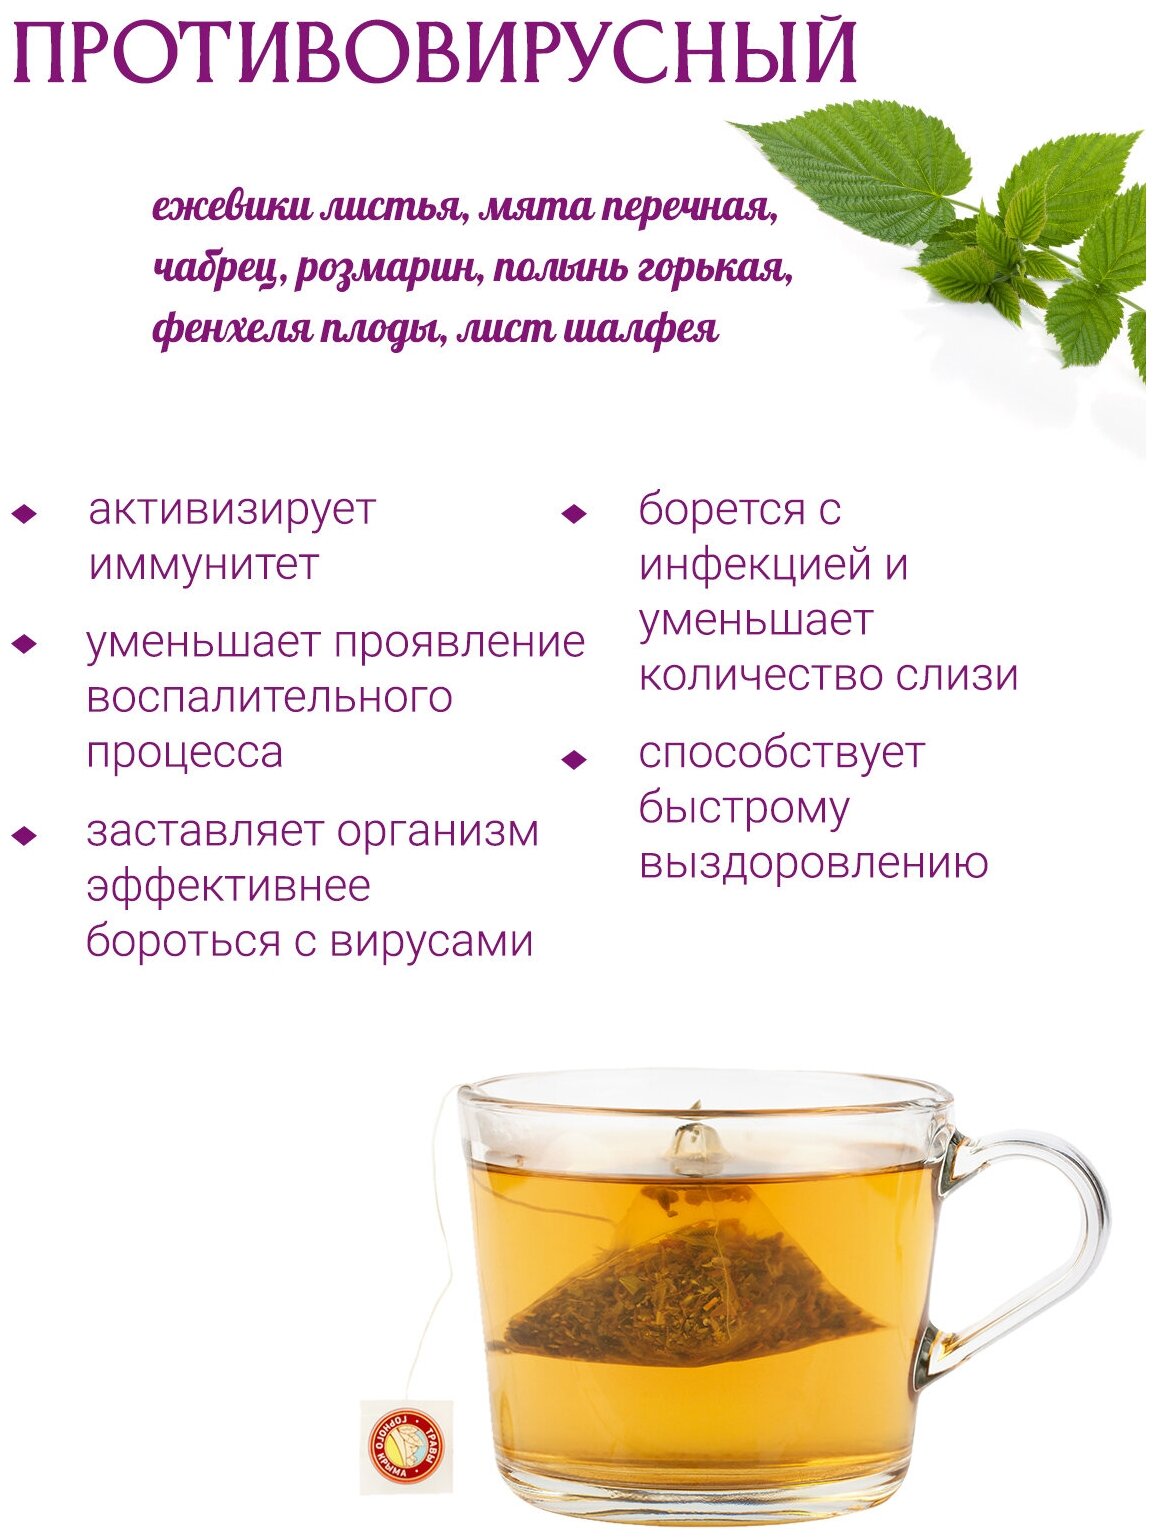 Противовирусный сбор травяной чай в пакетиках от простуды 20 шт